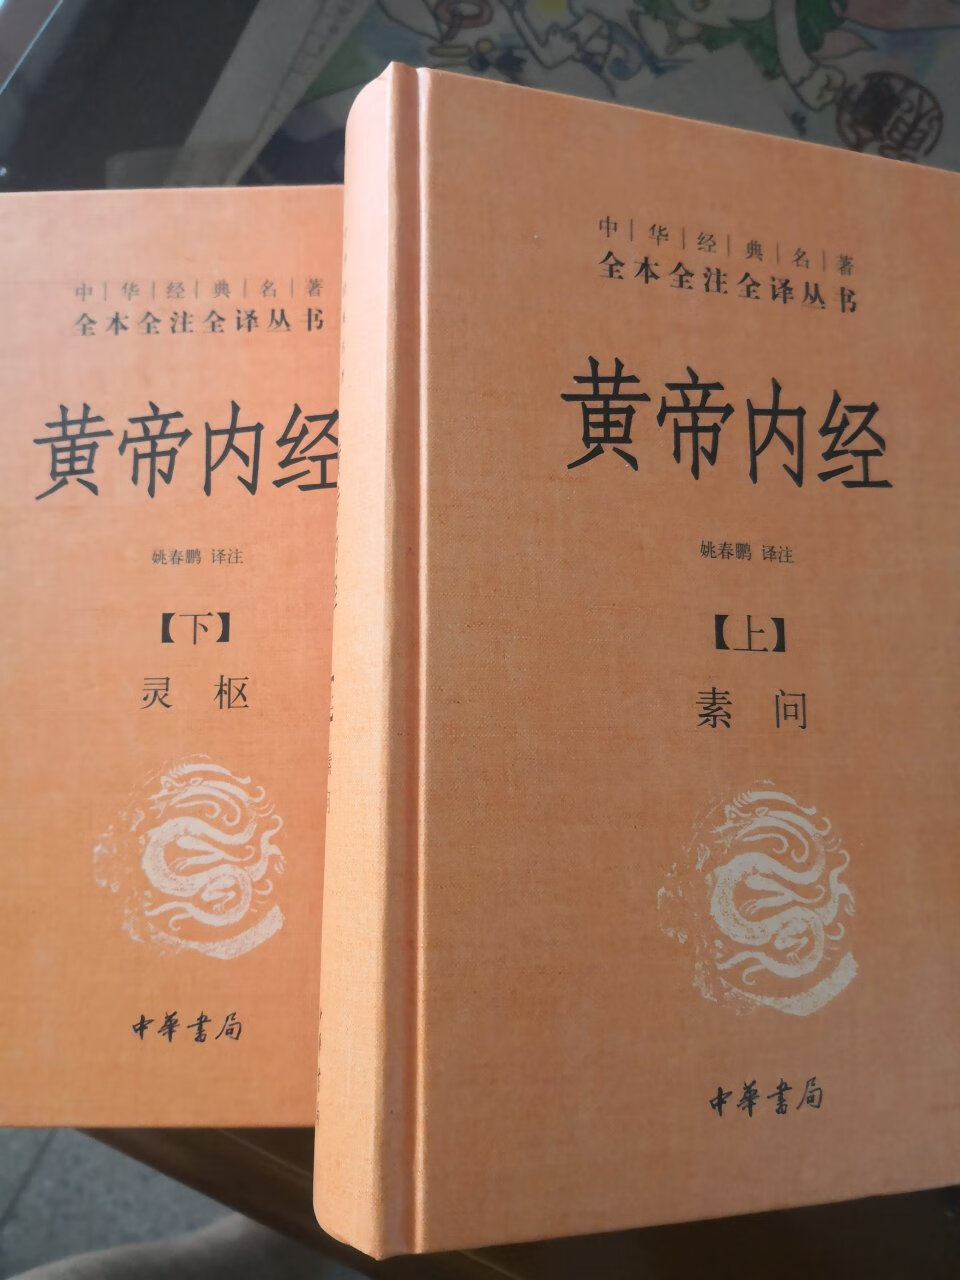 黄帝内经是古代一部医书，以黄帝和歧伯对话形式而成，为中华书局名著，全译全注本，版本不错，内容全面，印刷清楚，很高兴拥有。